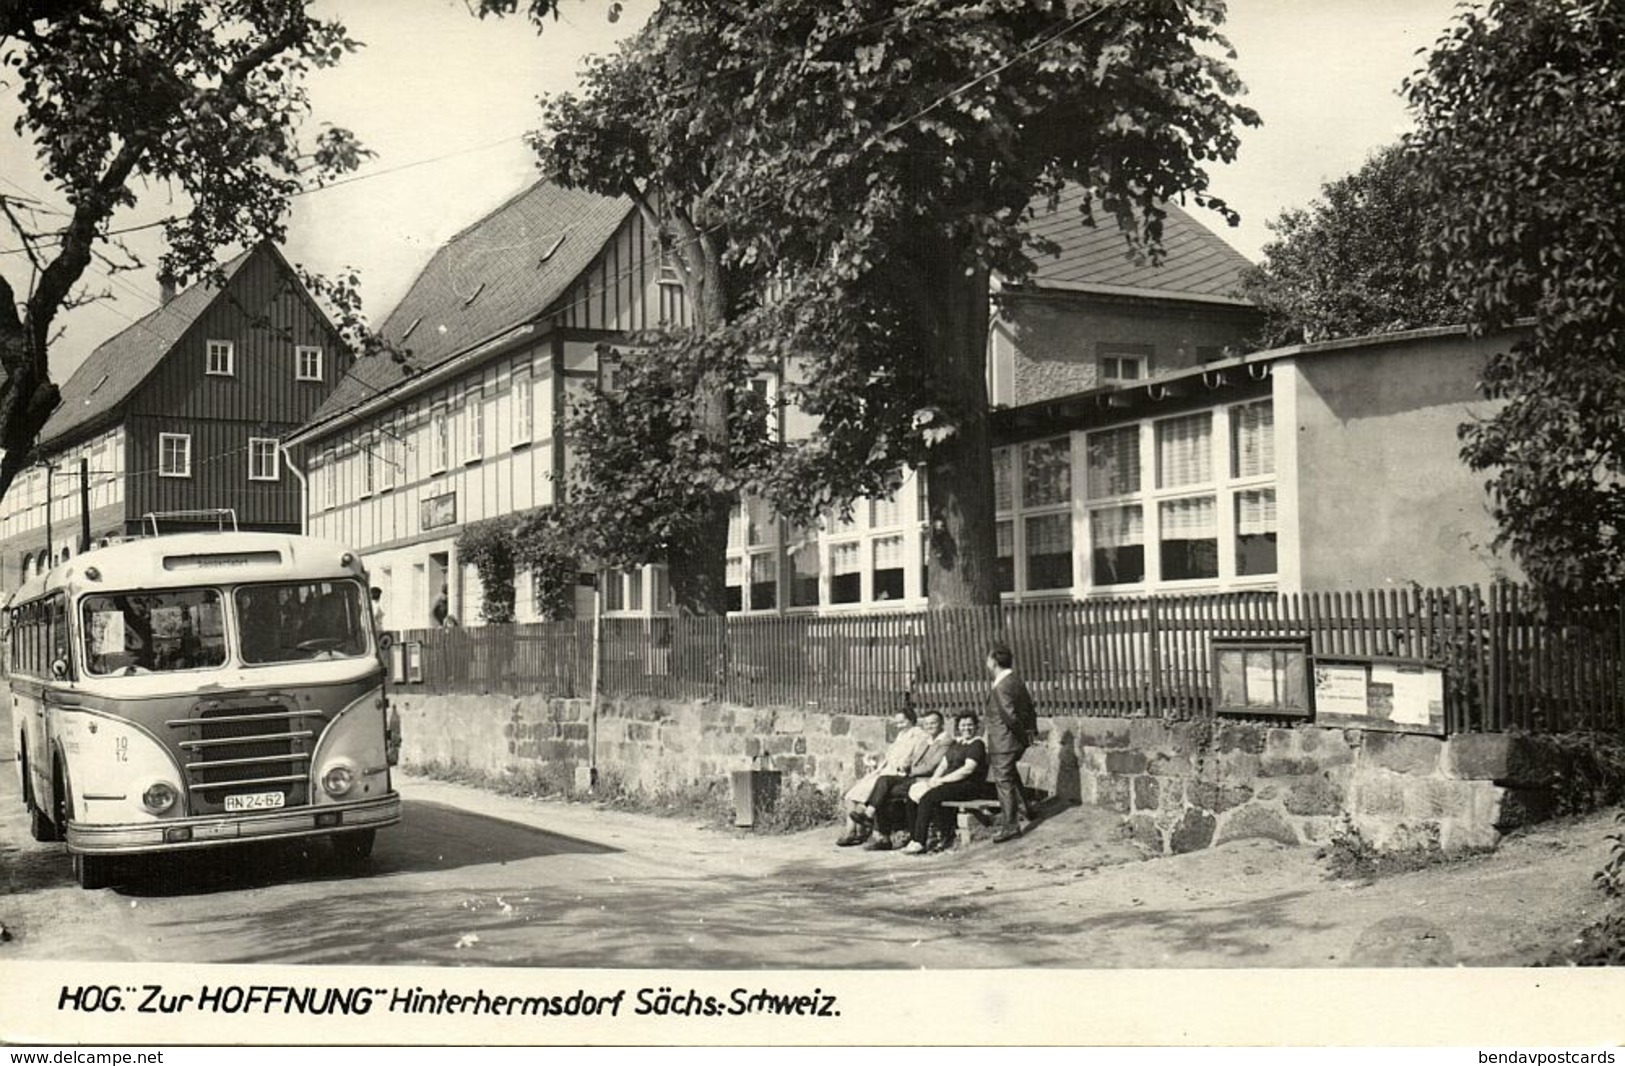 HINTERHERMSDORF, Sächs.-Schweiz, Hog. "Zur Hoffnung" Bus (1960s) AK - Hinterhermsdorf